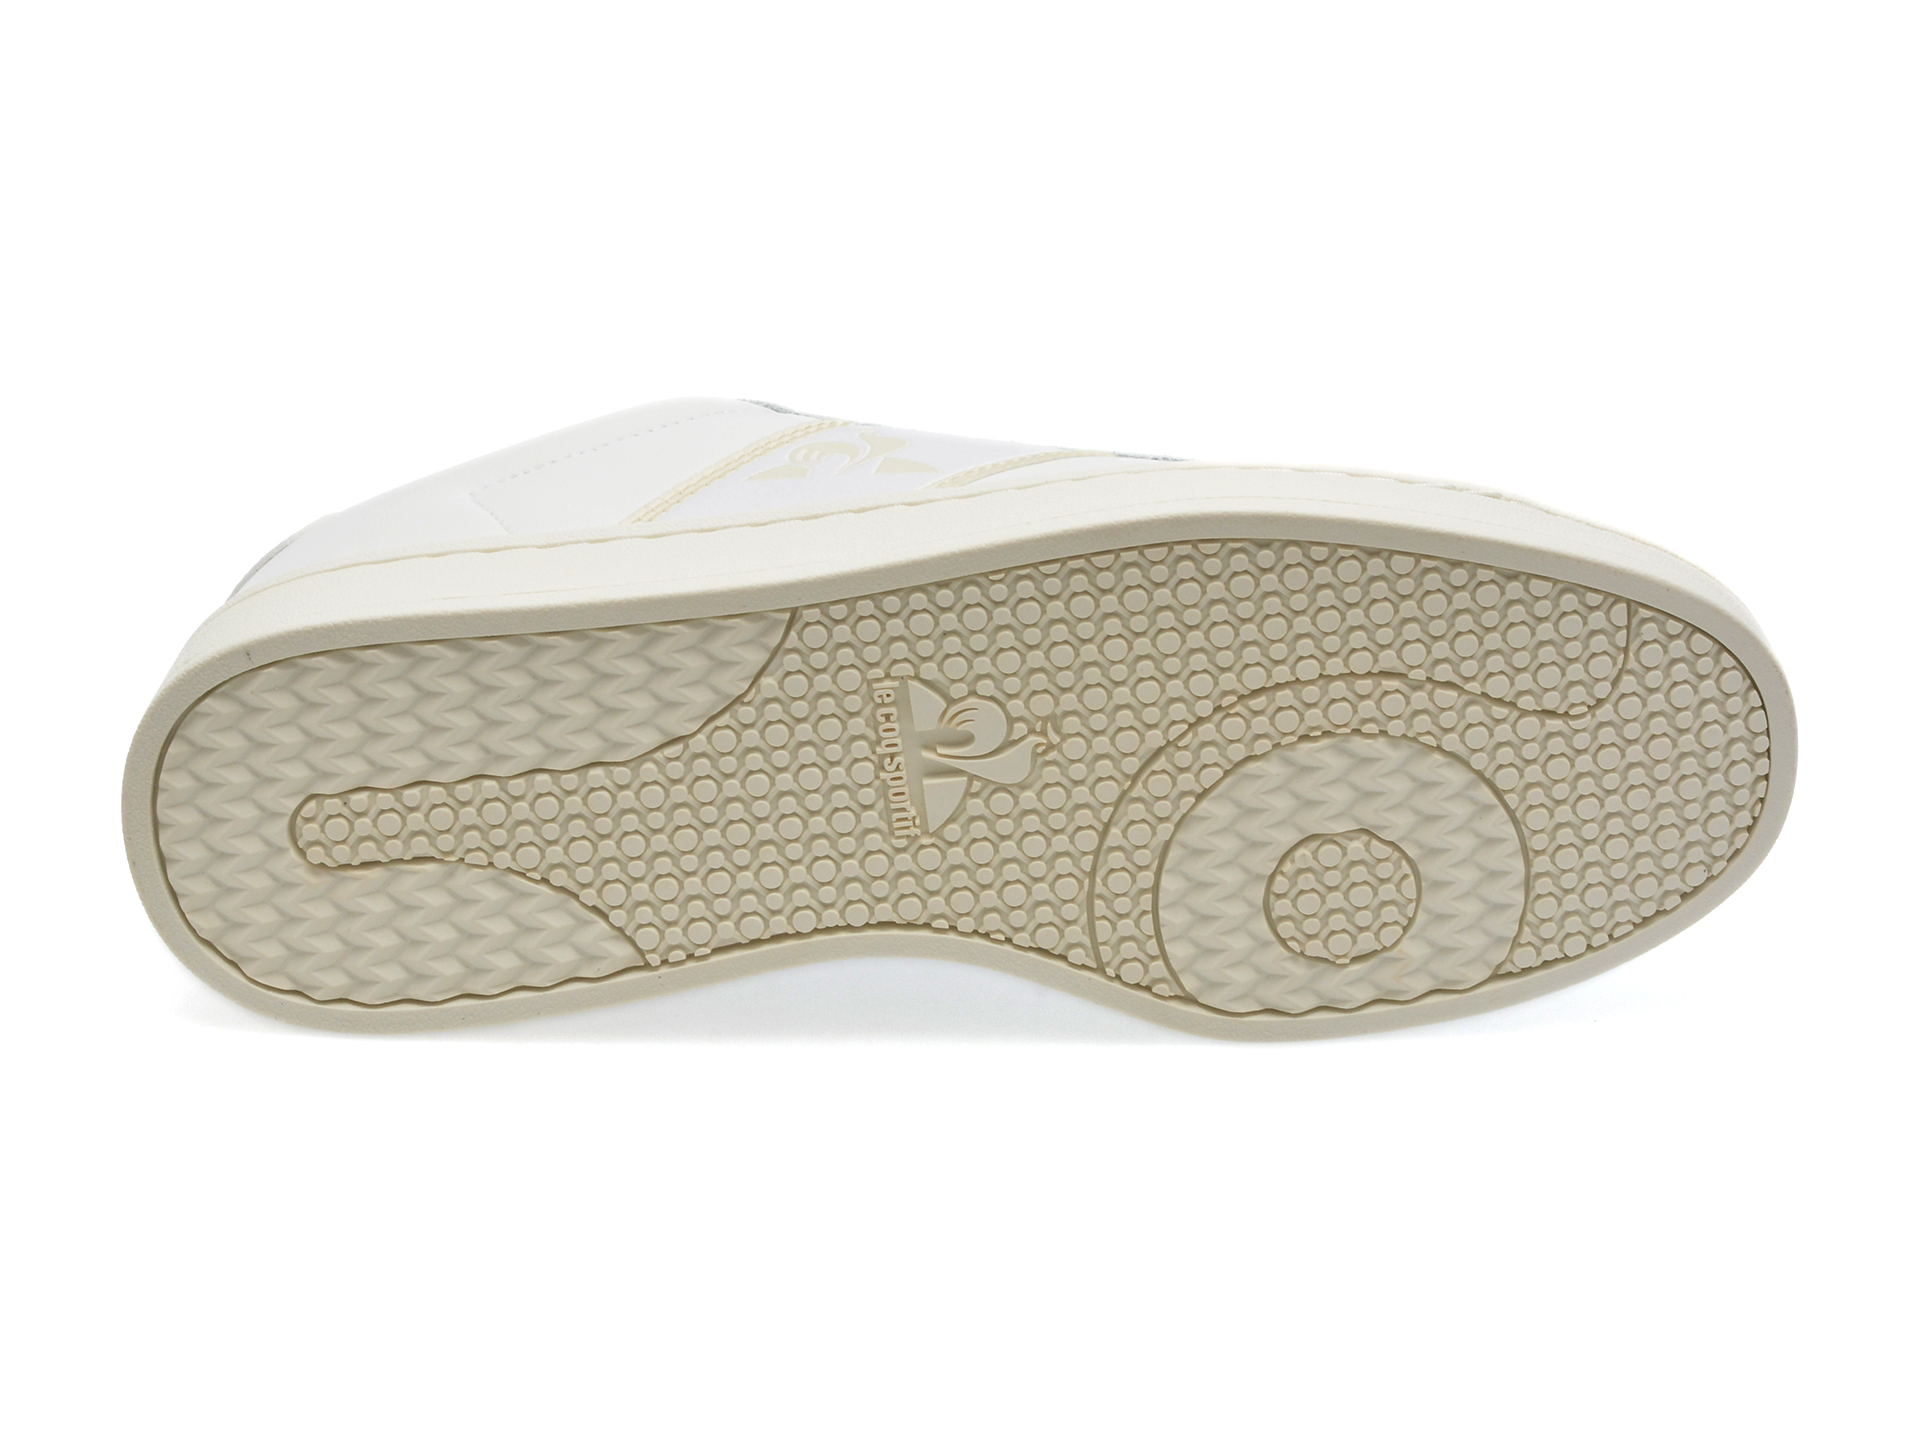 Pantofi LE COQ SPORTIF albi, 2310161, din piele naturala